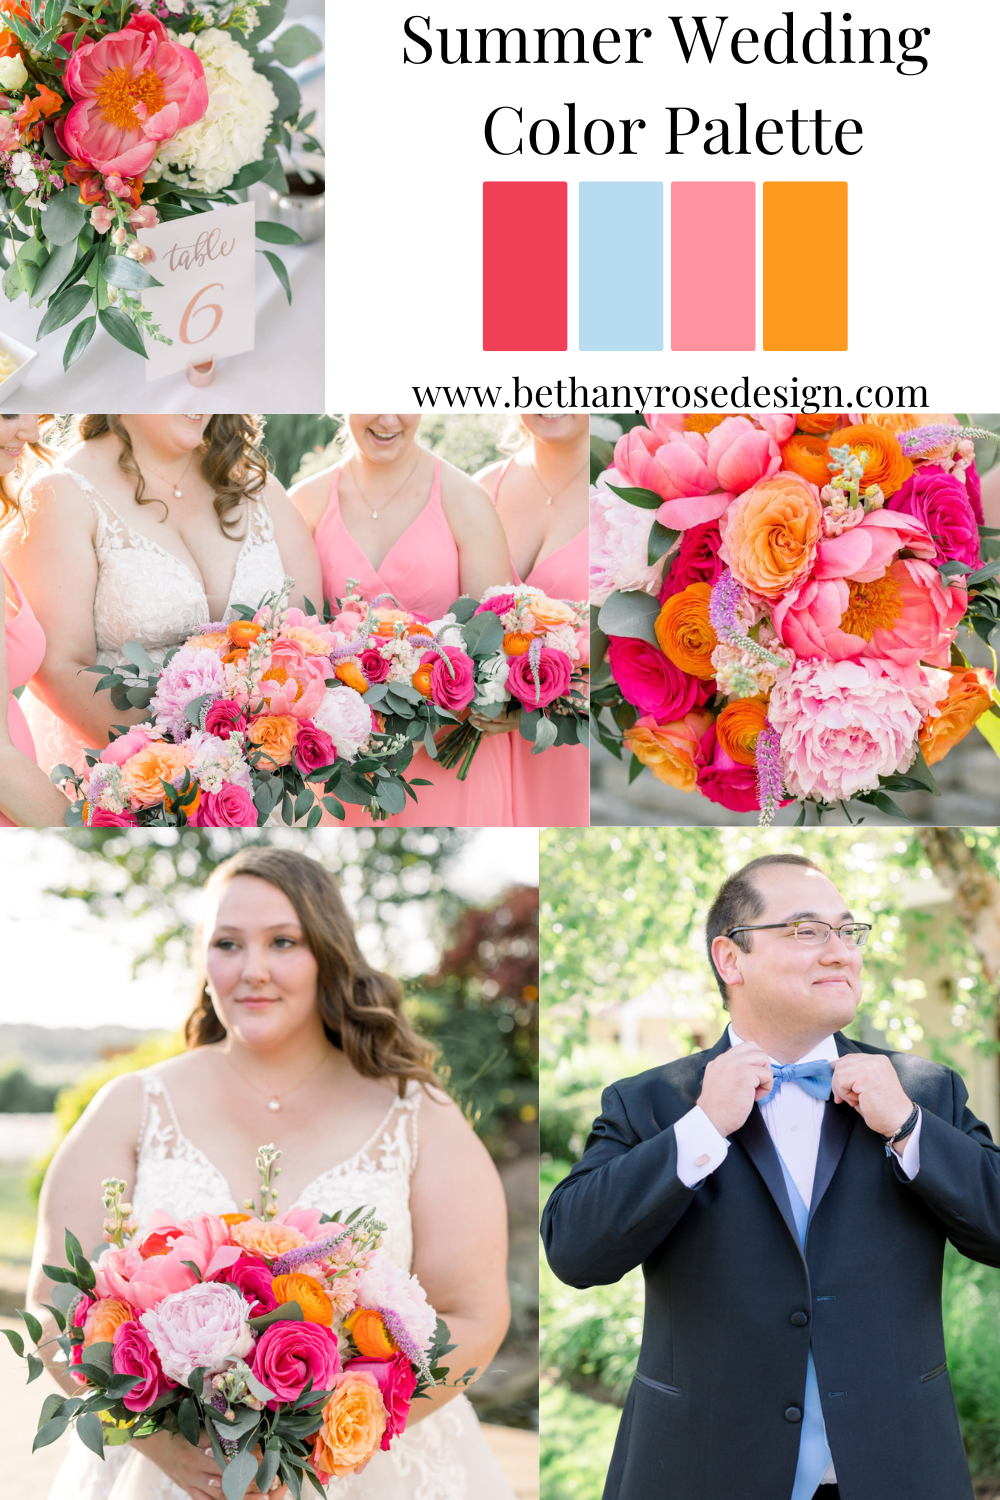 Our Wedding Color Palette